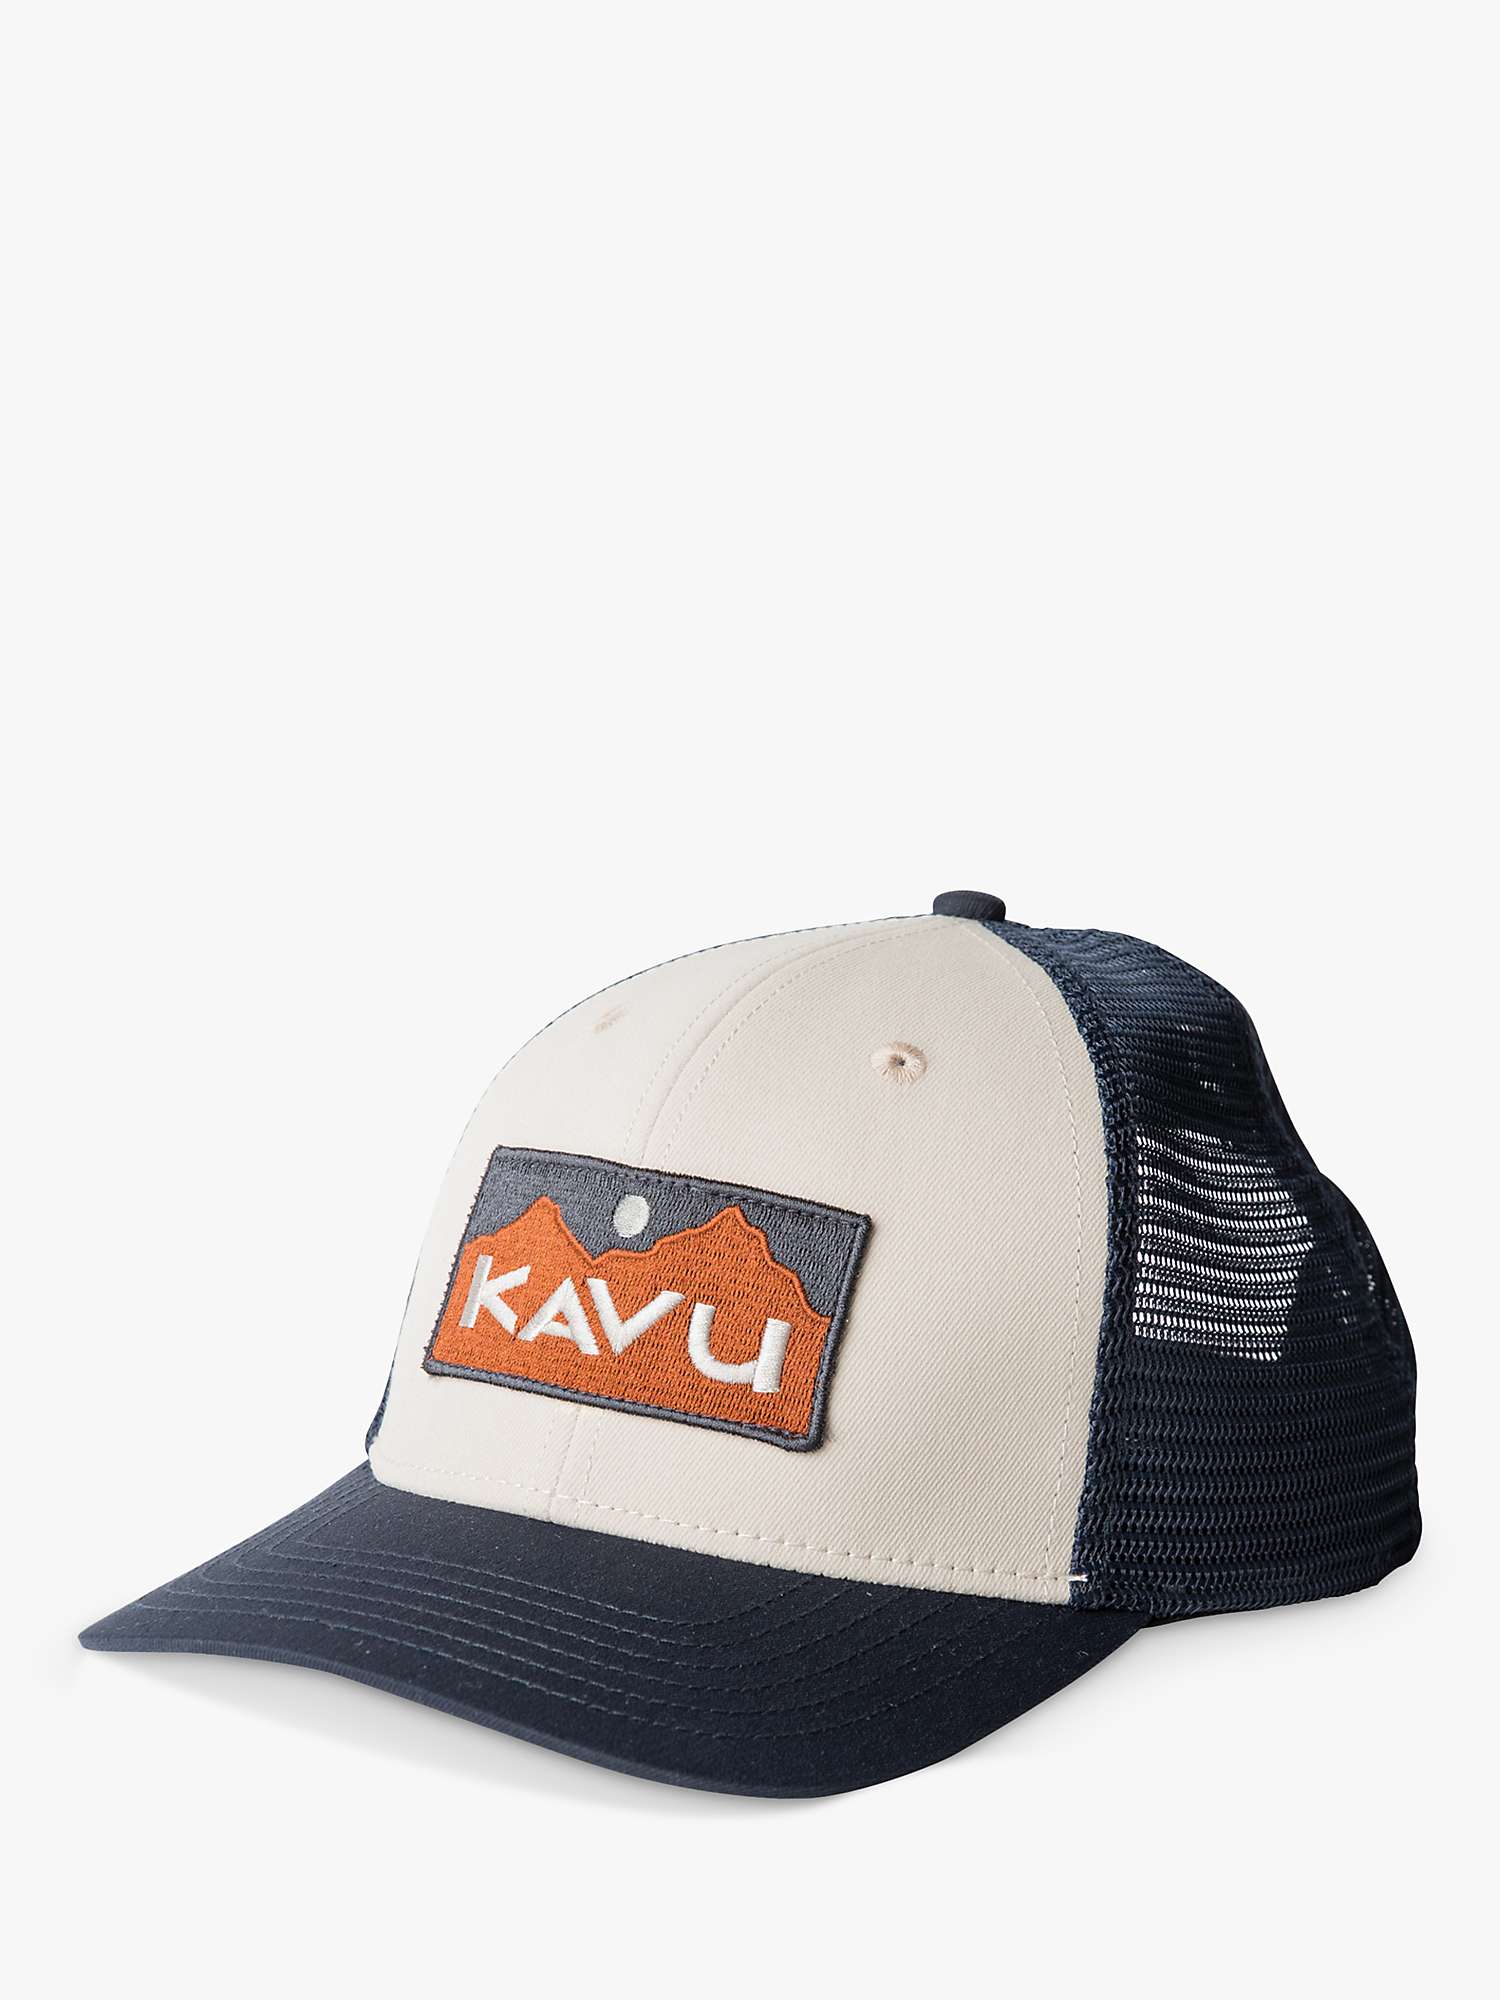 Buy KAVU Above Standard Hat, Blue/Multi Online at johnlewis.com